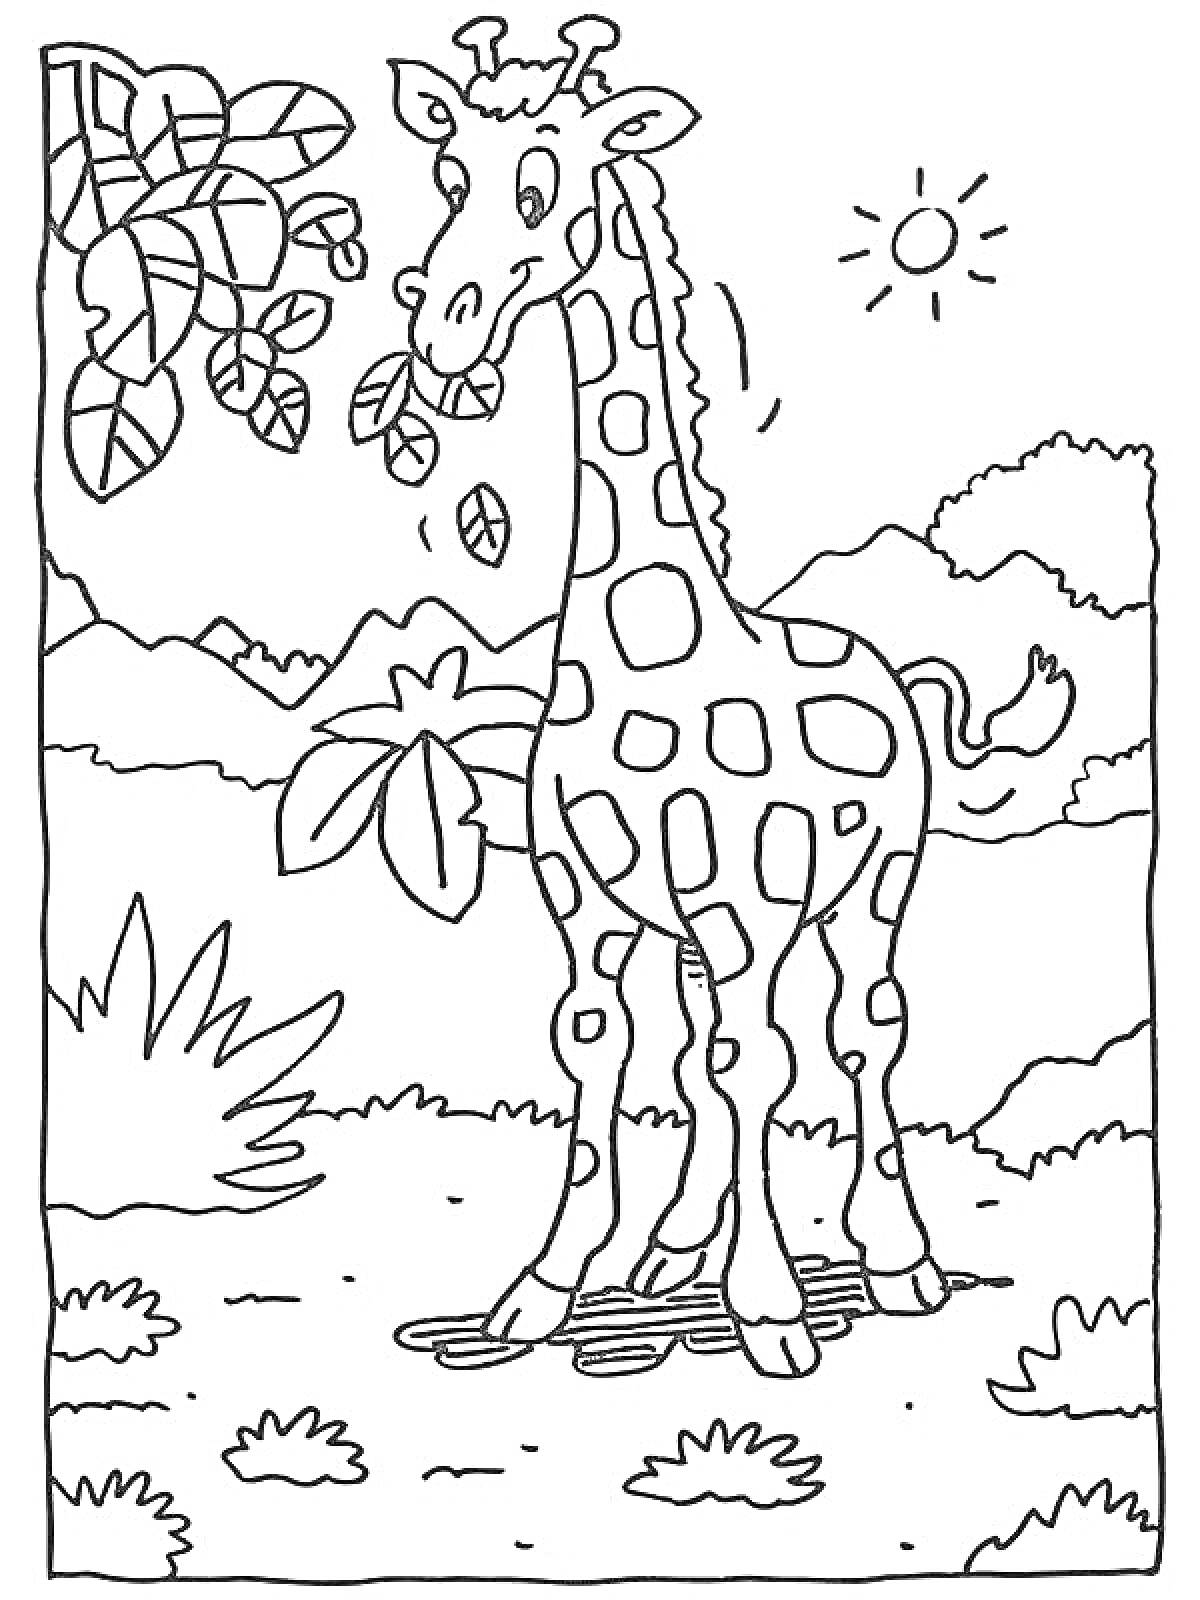 Раскраска Жираф на фоне природы, с веткой дерева и солнцем на небе